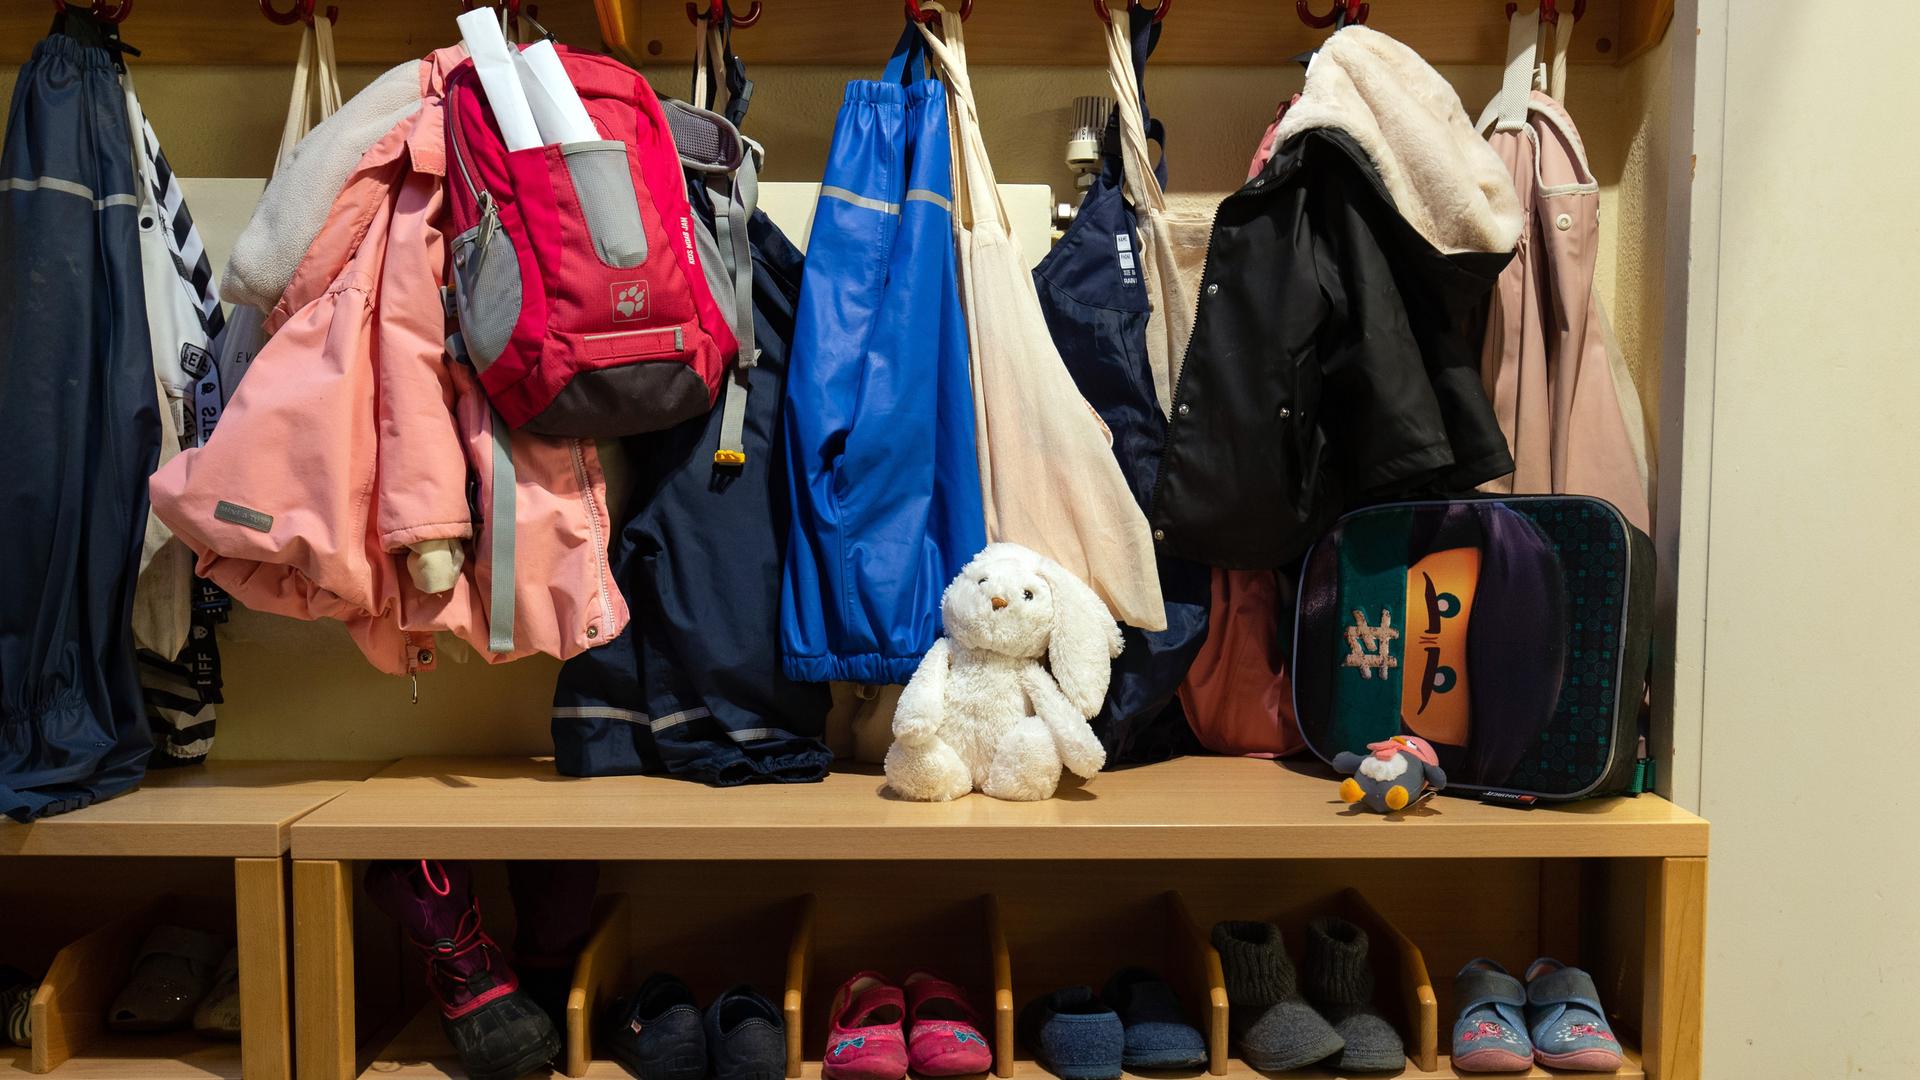 In der Garderobe einer Kita hängen Kinderjacken und -rucksäcke, darunter stehen Kinderschuhe. In der Mitte sitzt ein weißer Stoffhase. 